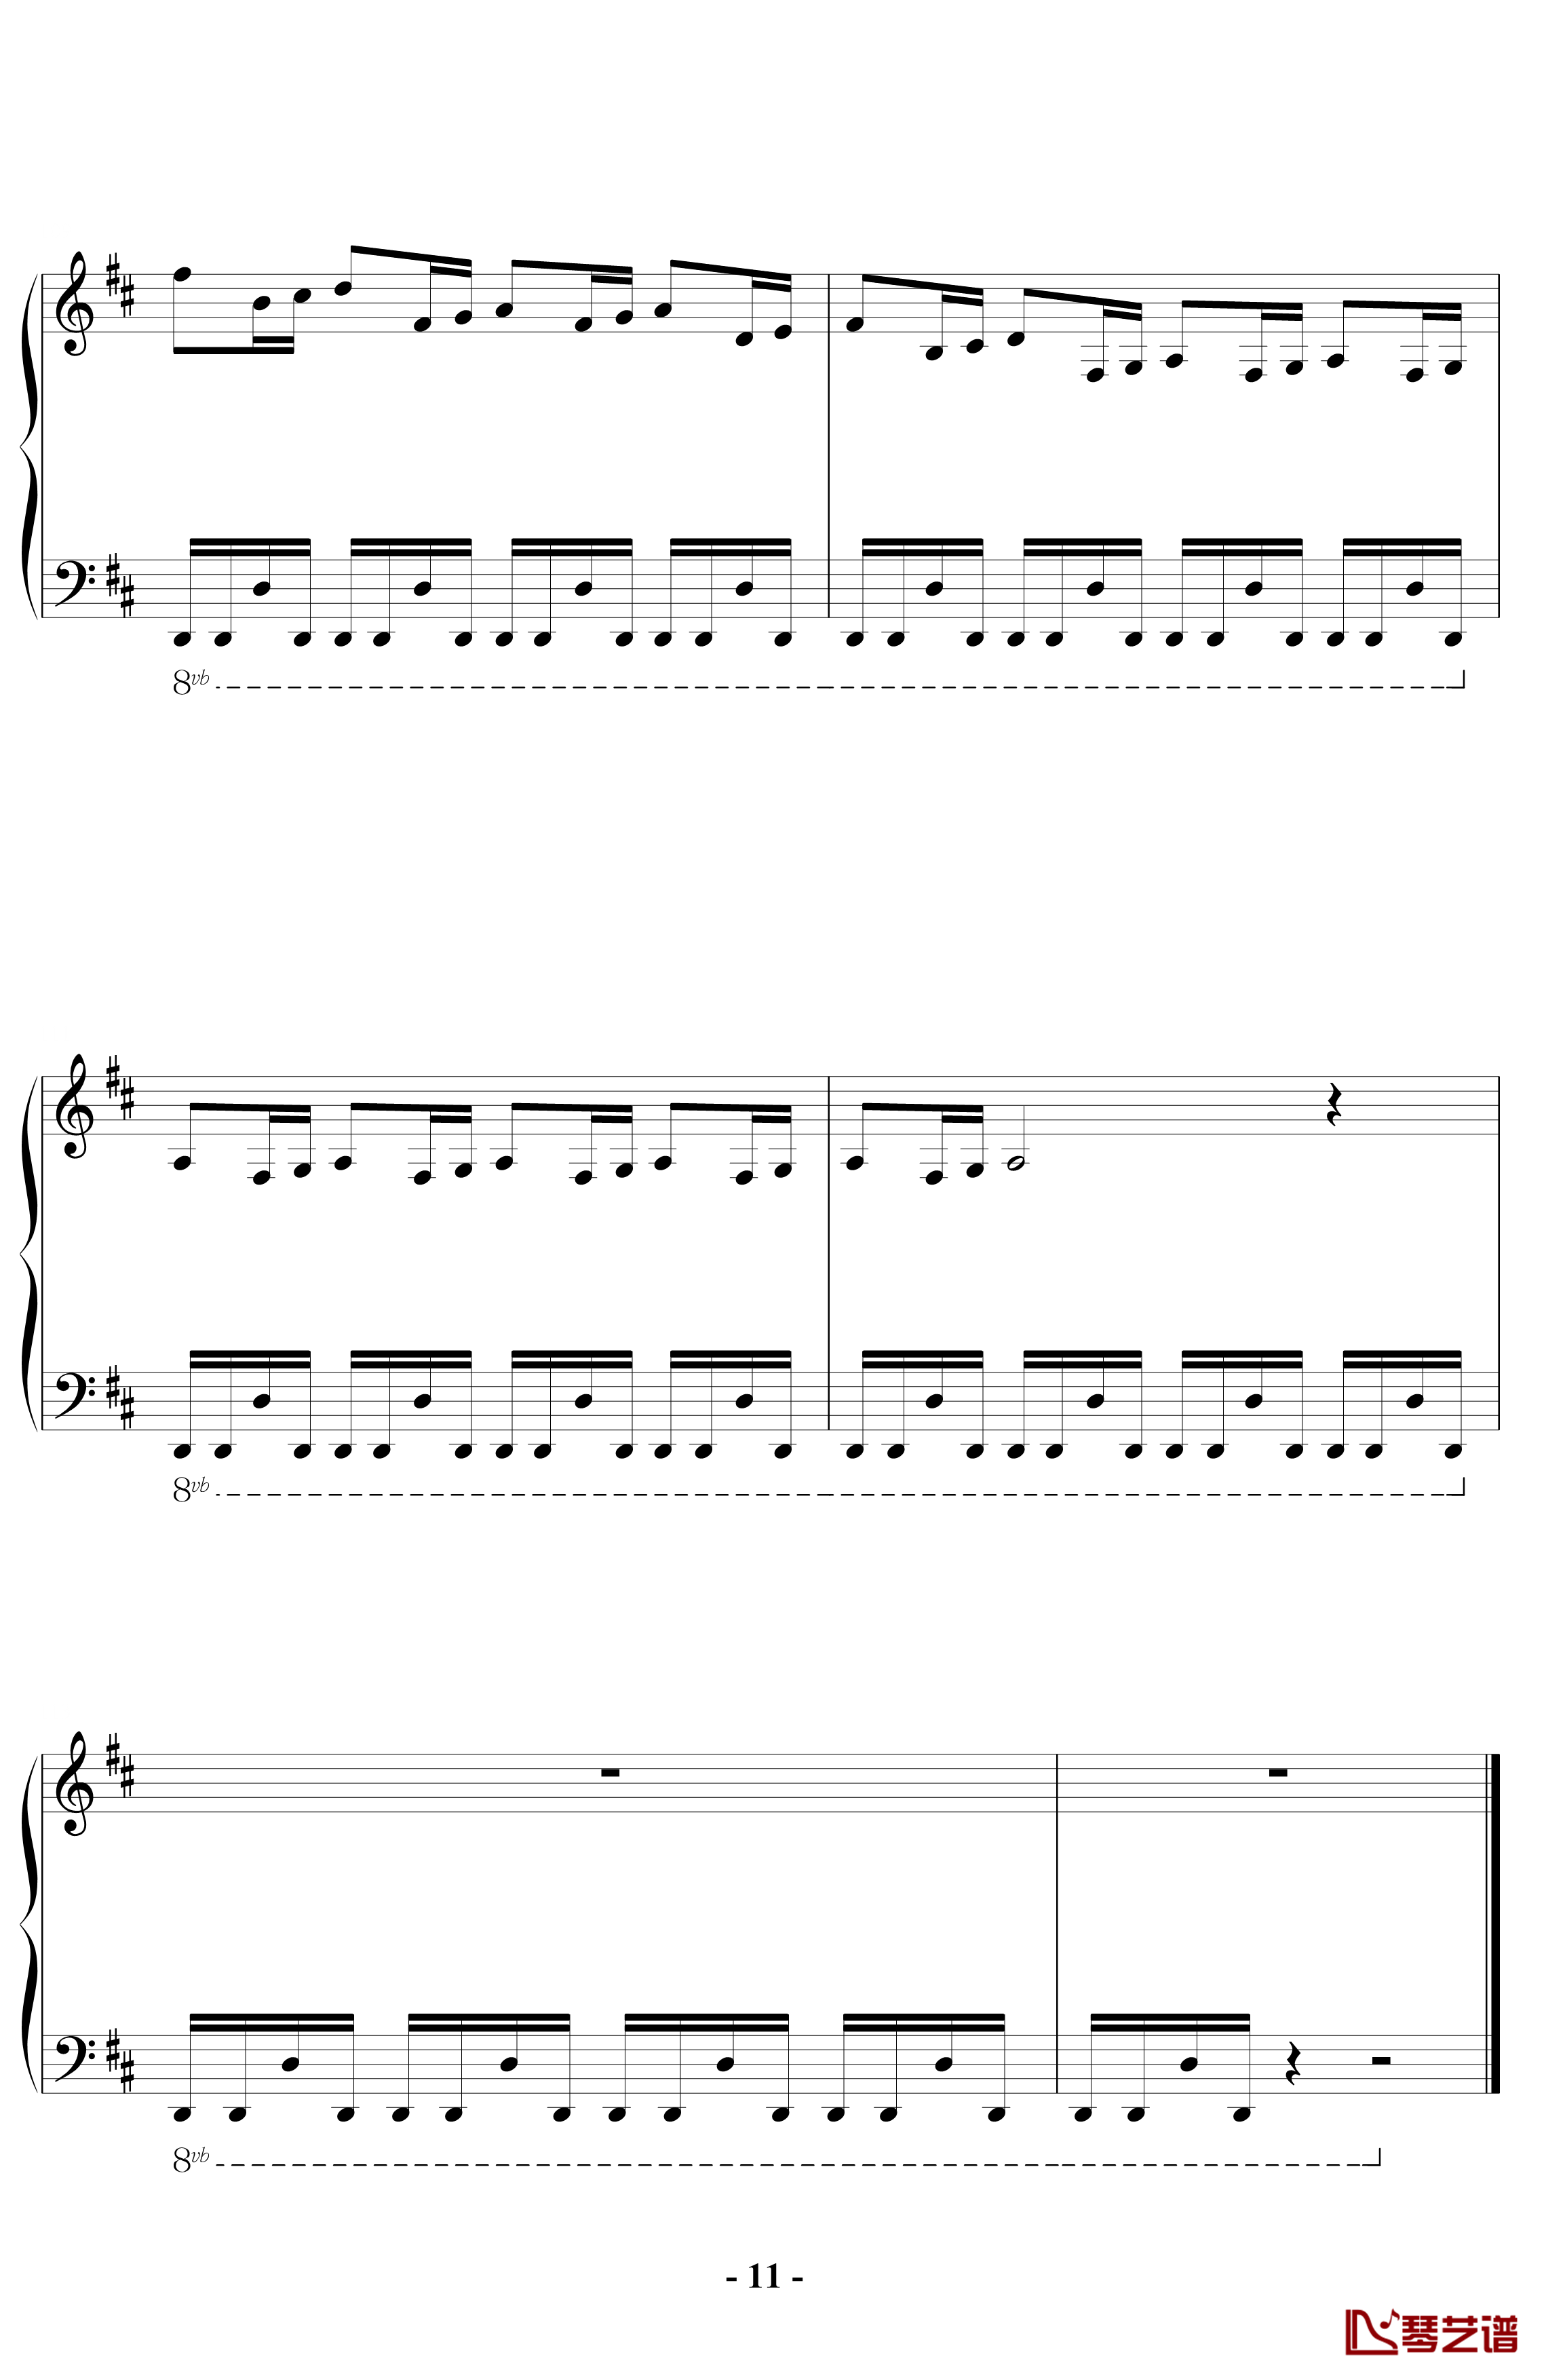 卡农钢琴谱-钢琴摇滚标准版-帕赫贝尔-Pachelbel11